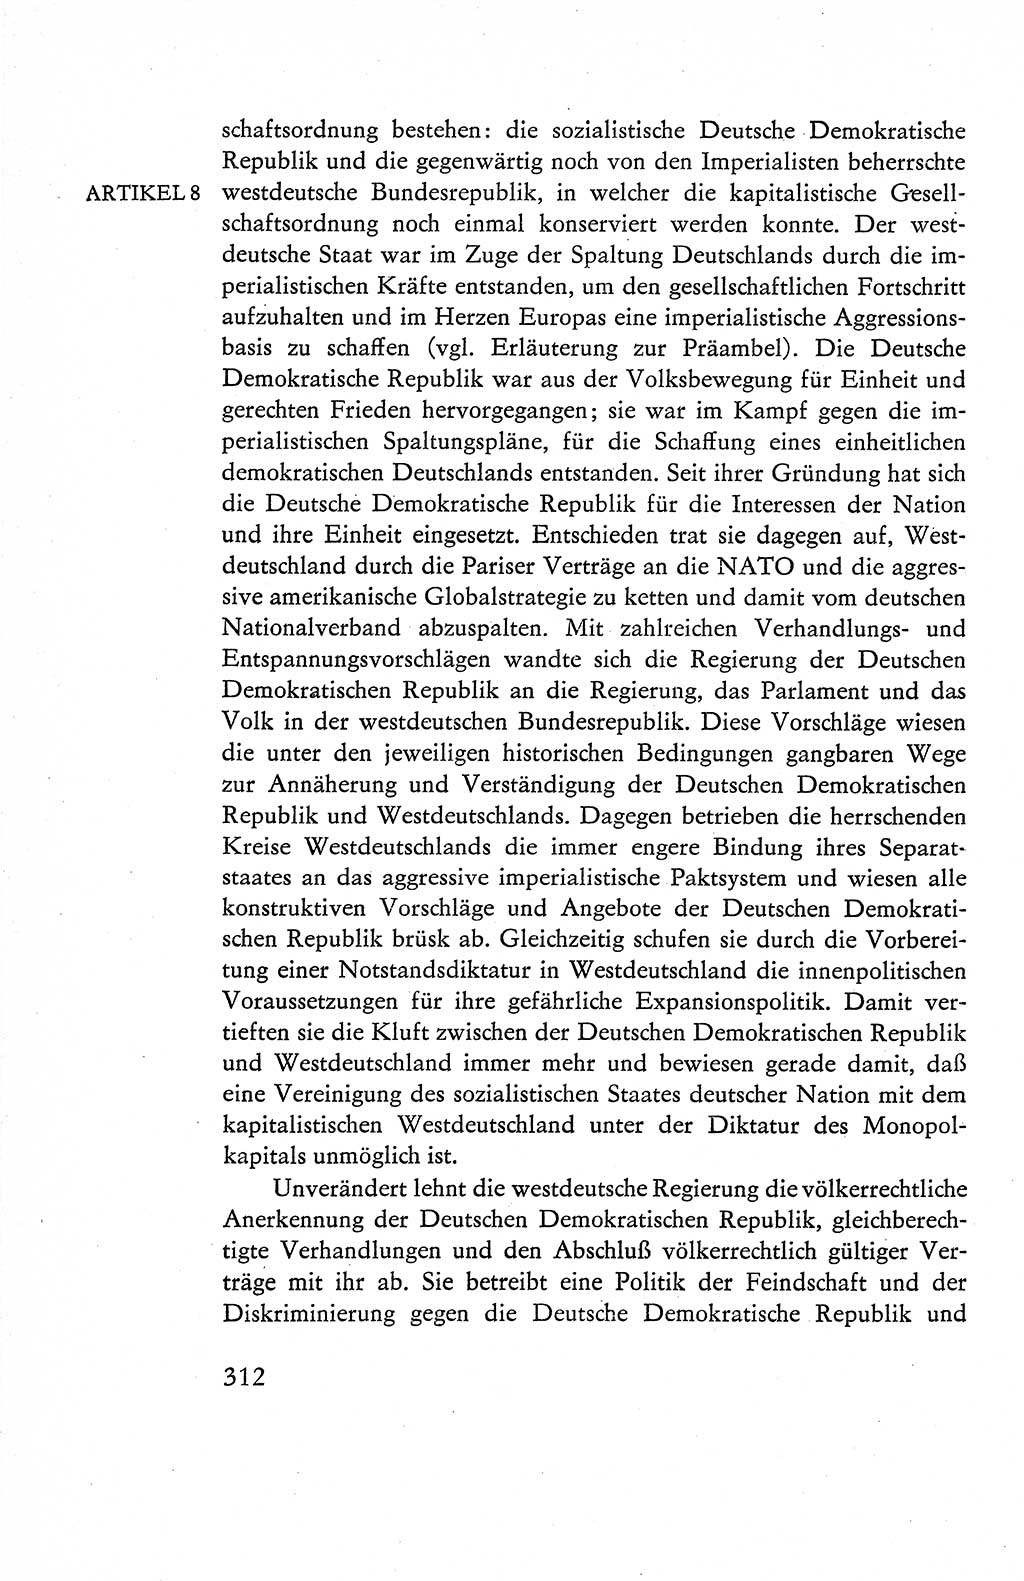 Verfassung der Deutschen Demokratischen Republik (DDR), Dokumente, Kommentar 1969, Band 1, Seite 312 (Verf. DDR Dok. Komm. 1969, Bd. 1, S. 312)